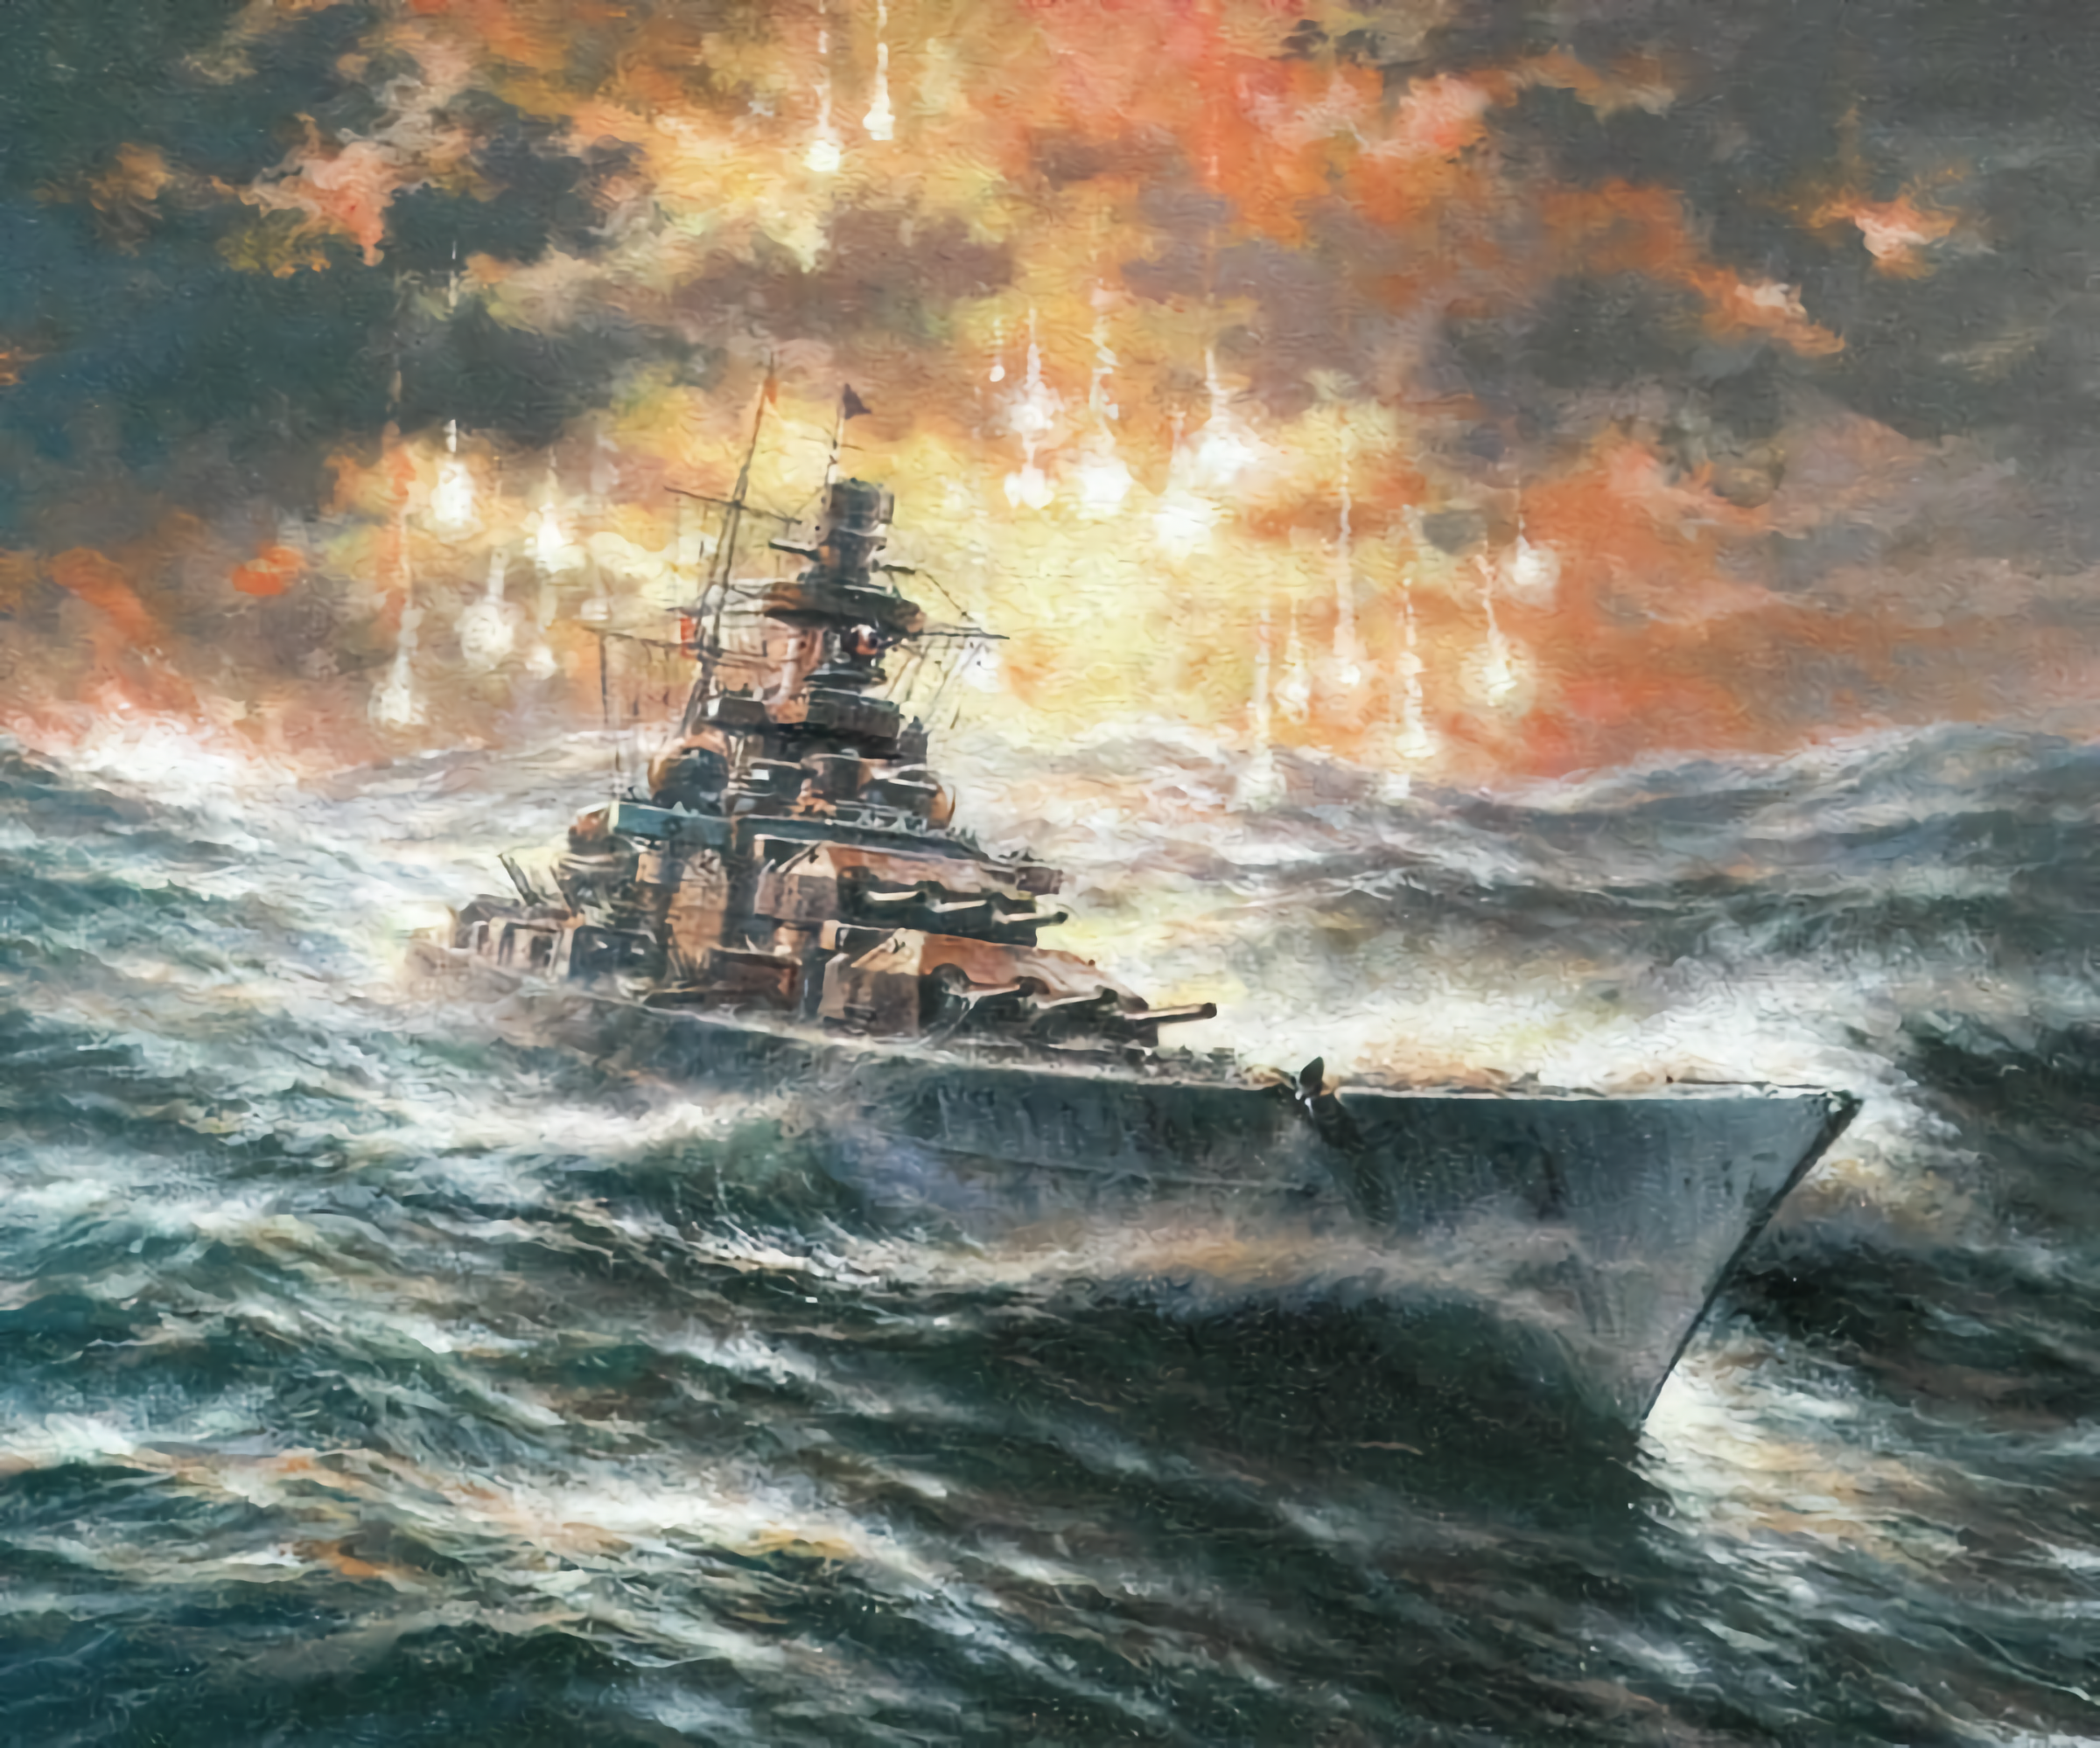 Representación del “Scharnhorst” perseguido por la escuadra Británica, Iluminado por bengalas, en medio de la tempestad.